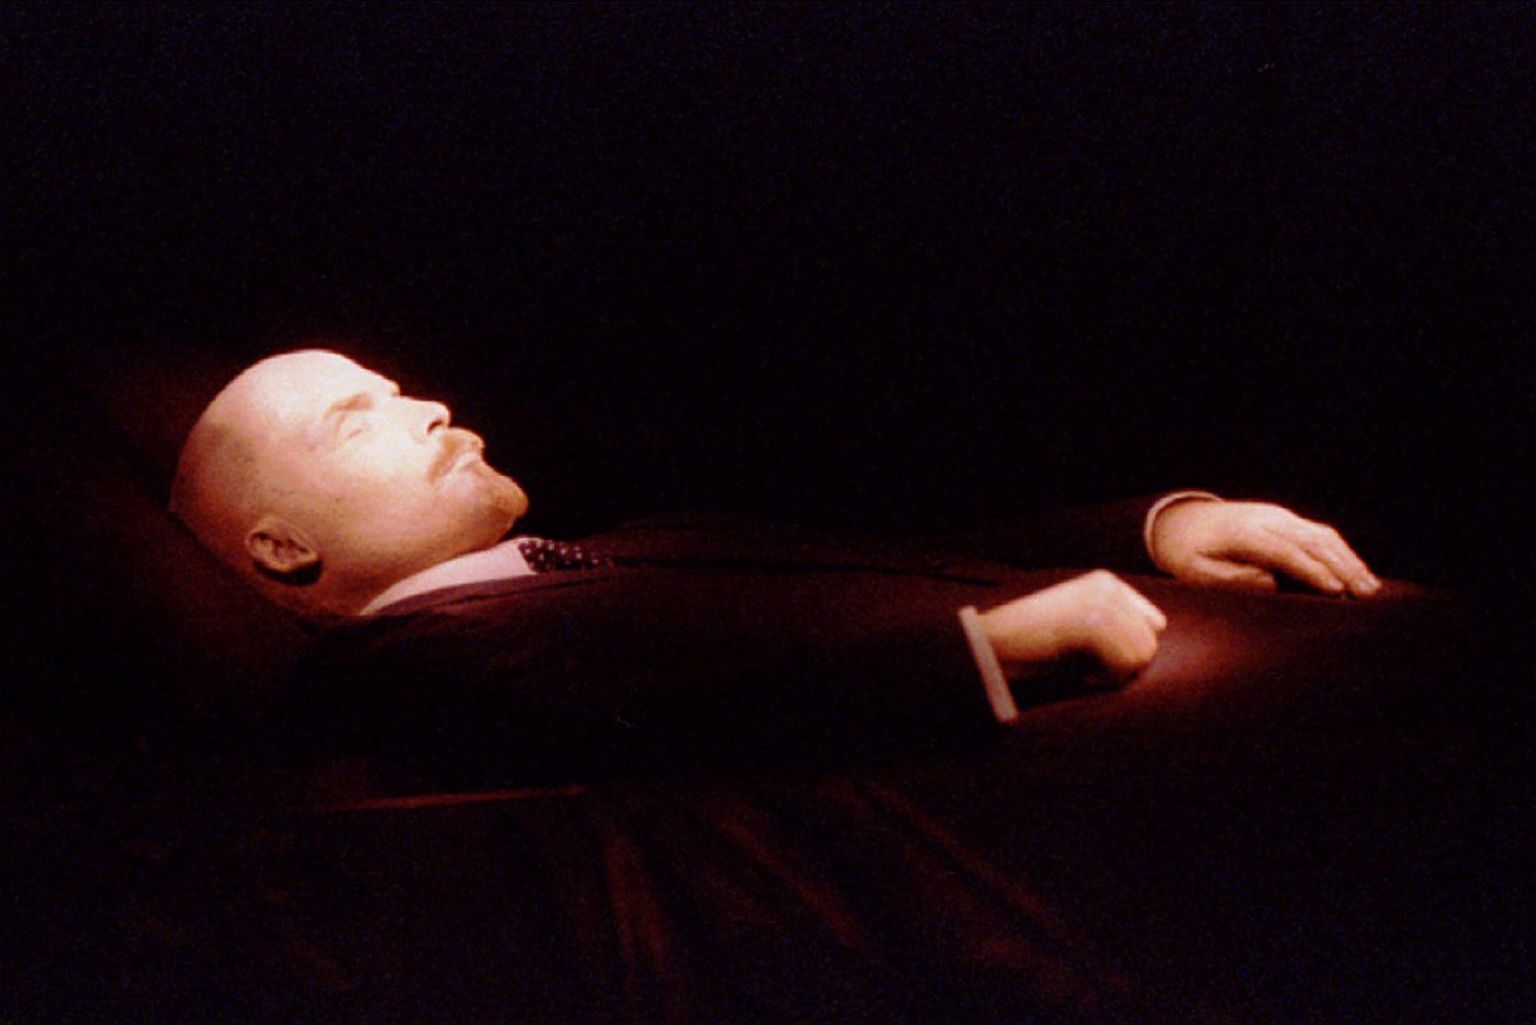 Vladimir Lenini palsameeritud keha on  Moskva Punasel väljaku mausoleumis väljapandud alates tema surmast 1924. aastal.